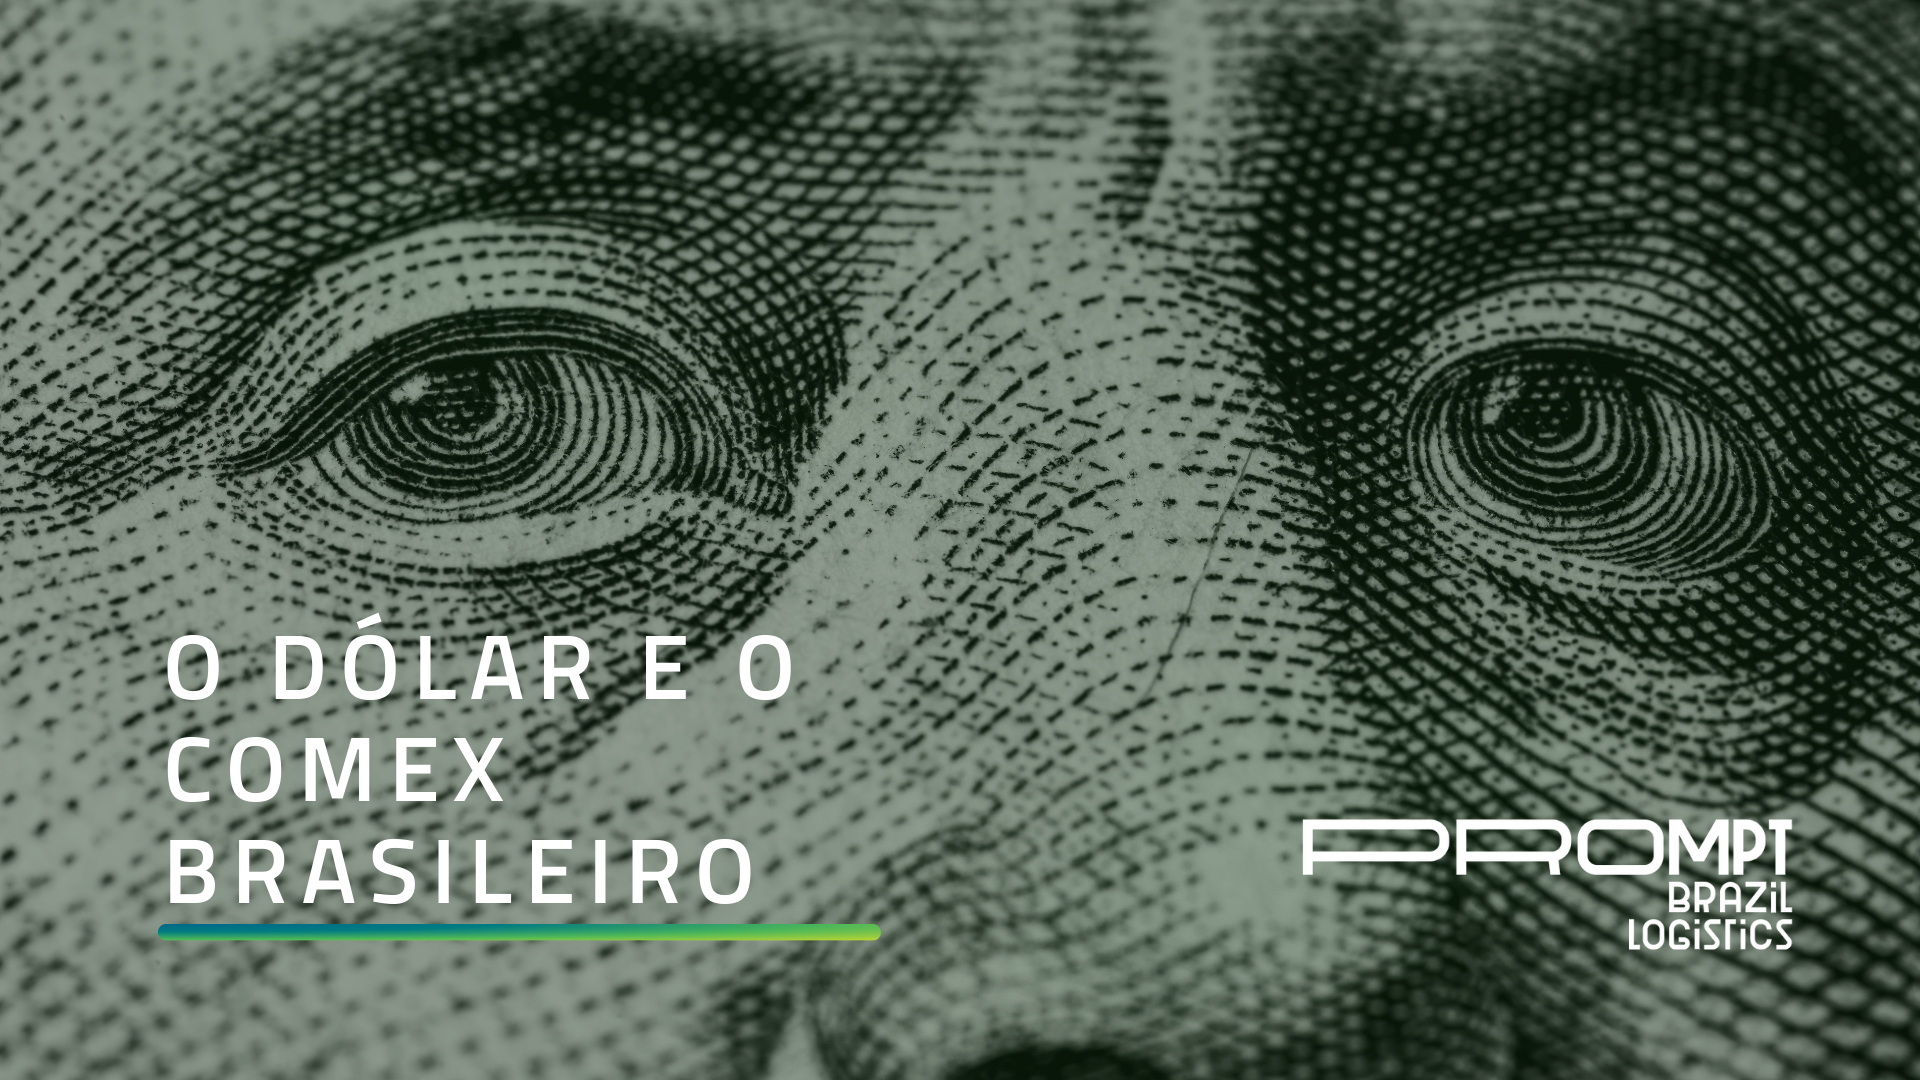 O dólar vai cair? Saiba tudo sobre dólar e comex nesse artigo exclusivo da Prompt Brazil.